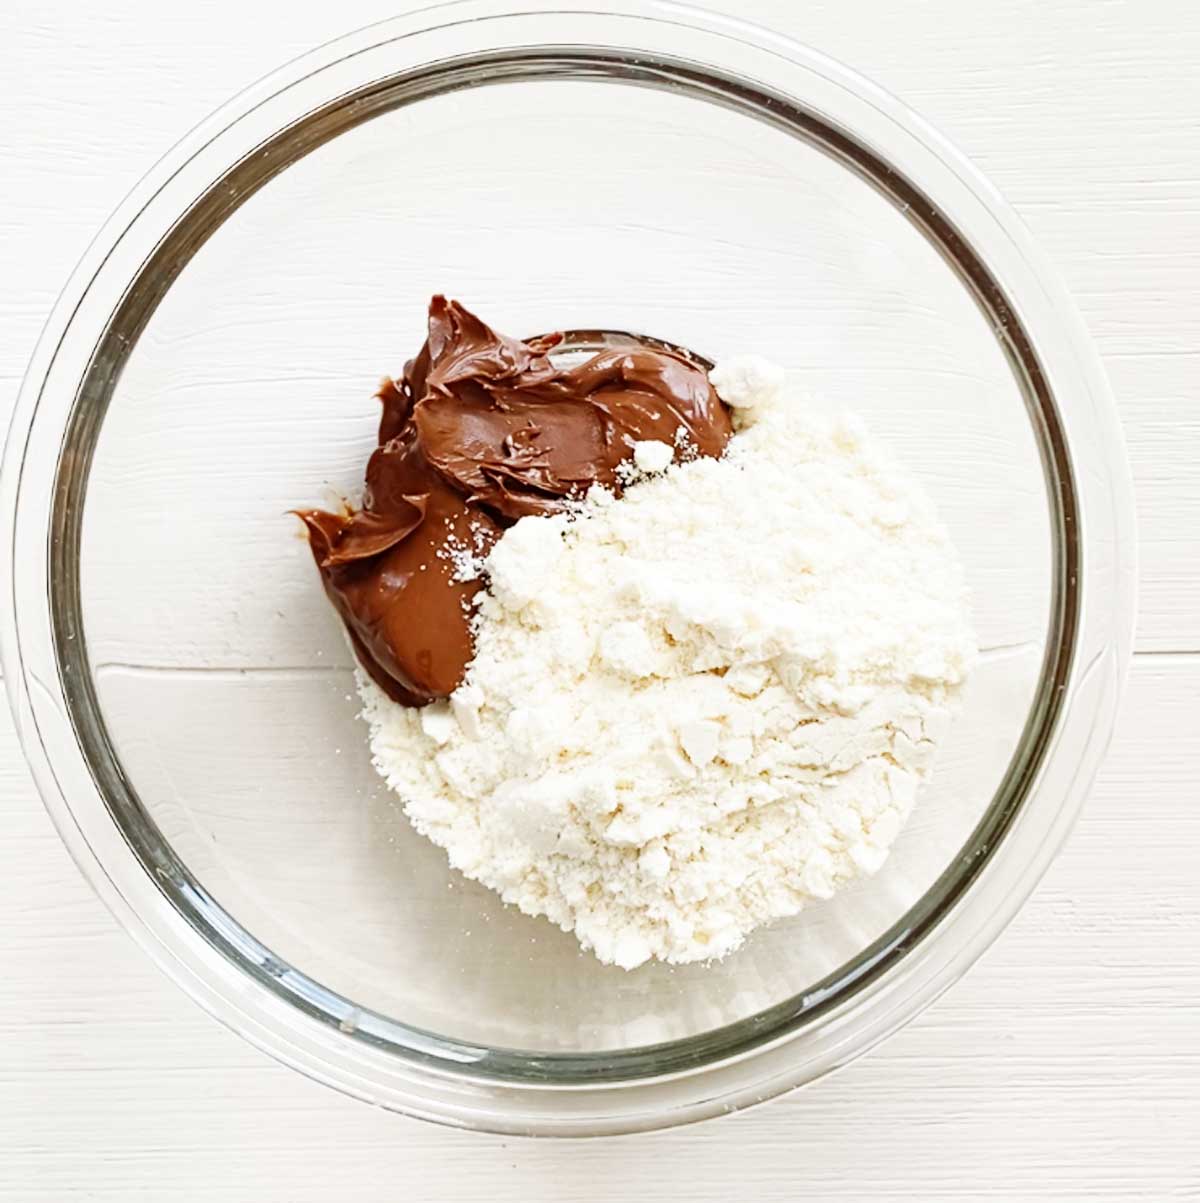 2-Ingredient Nutella Chocolate Mooncakes Recipe - Nutella Chocolate Mooncakes